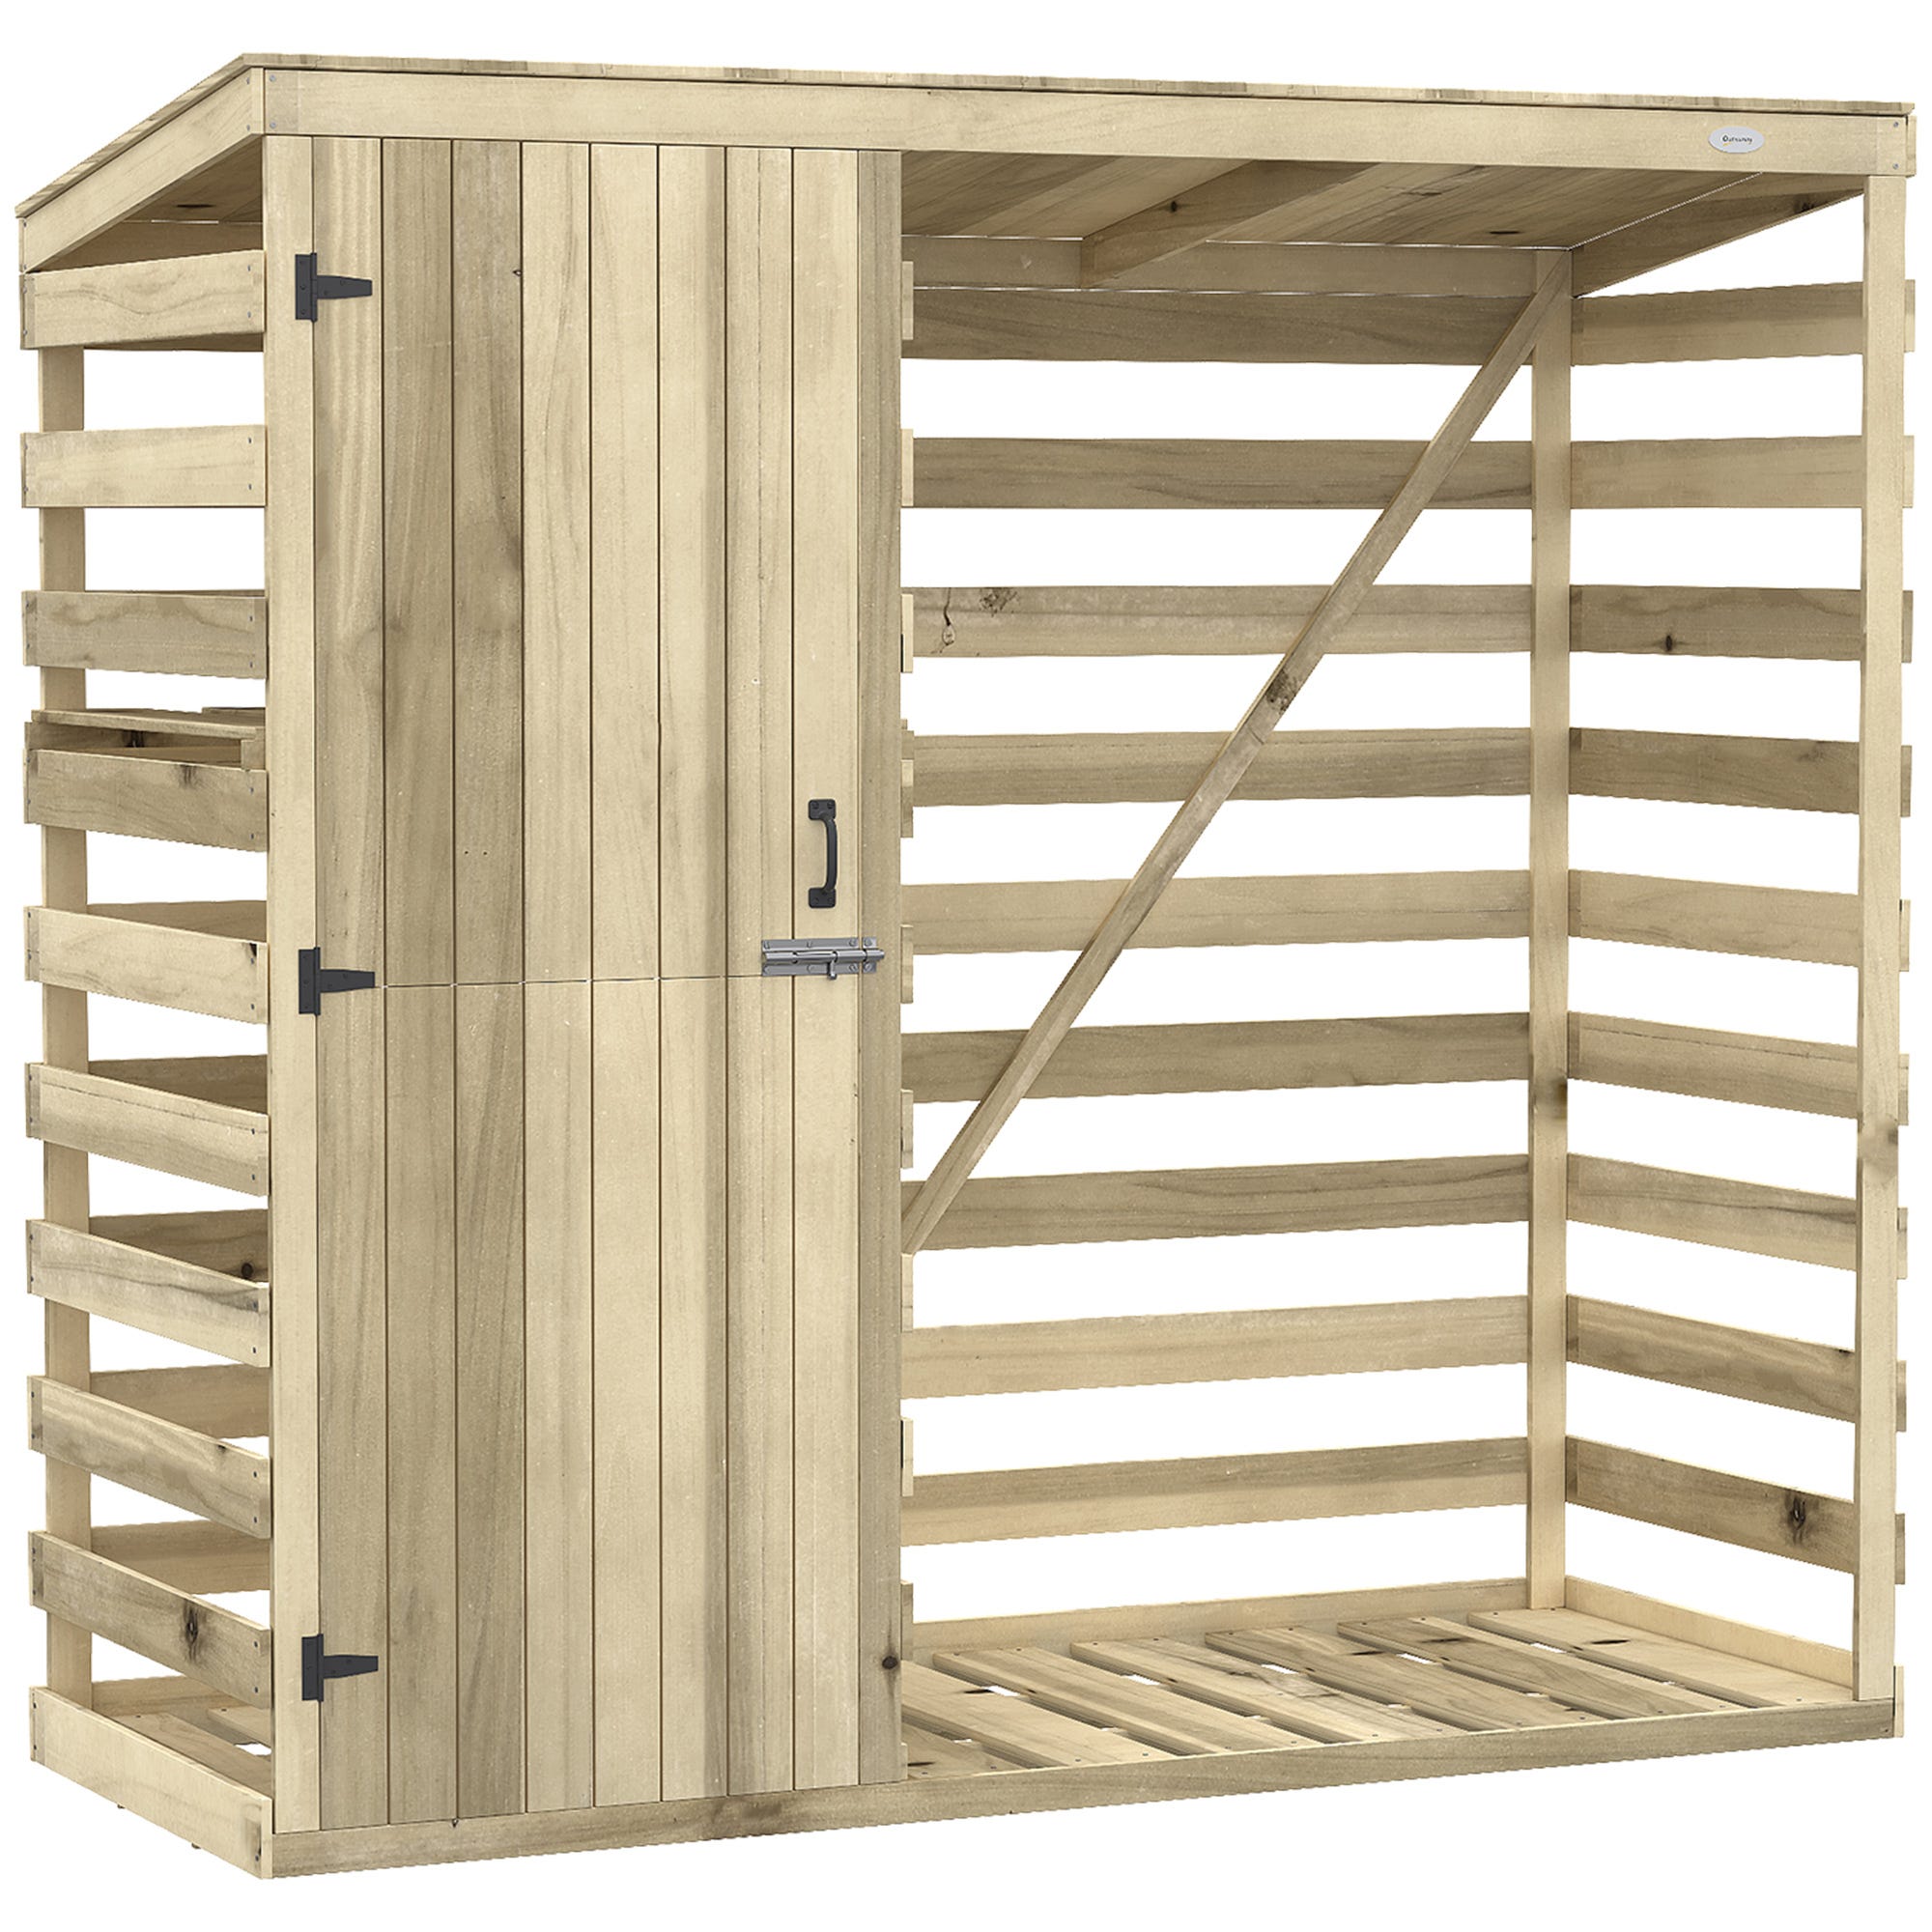 Abri pour bois de chauffage avec armoire - Dimensions : 250 x 100